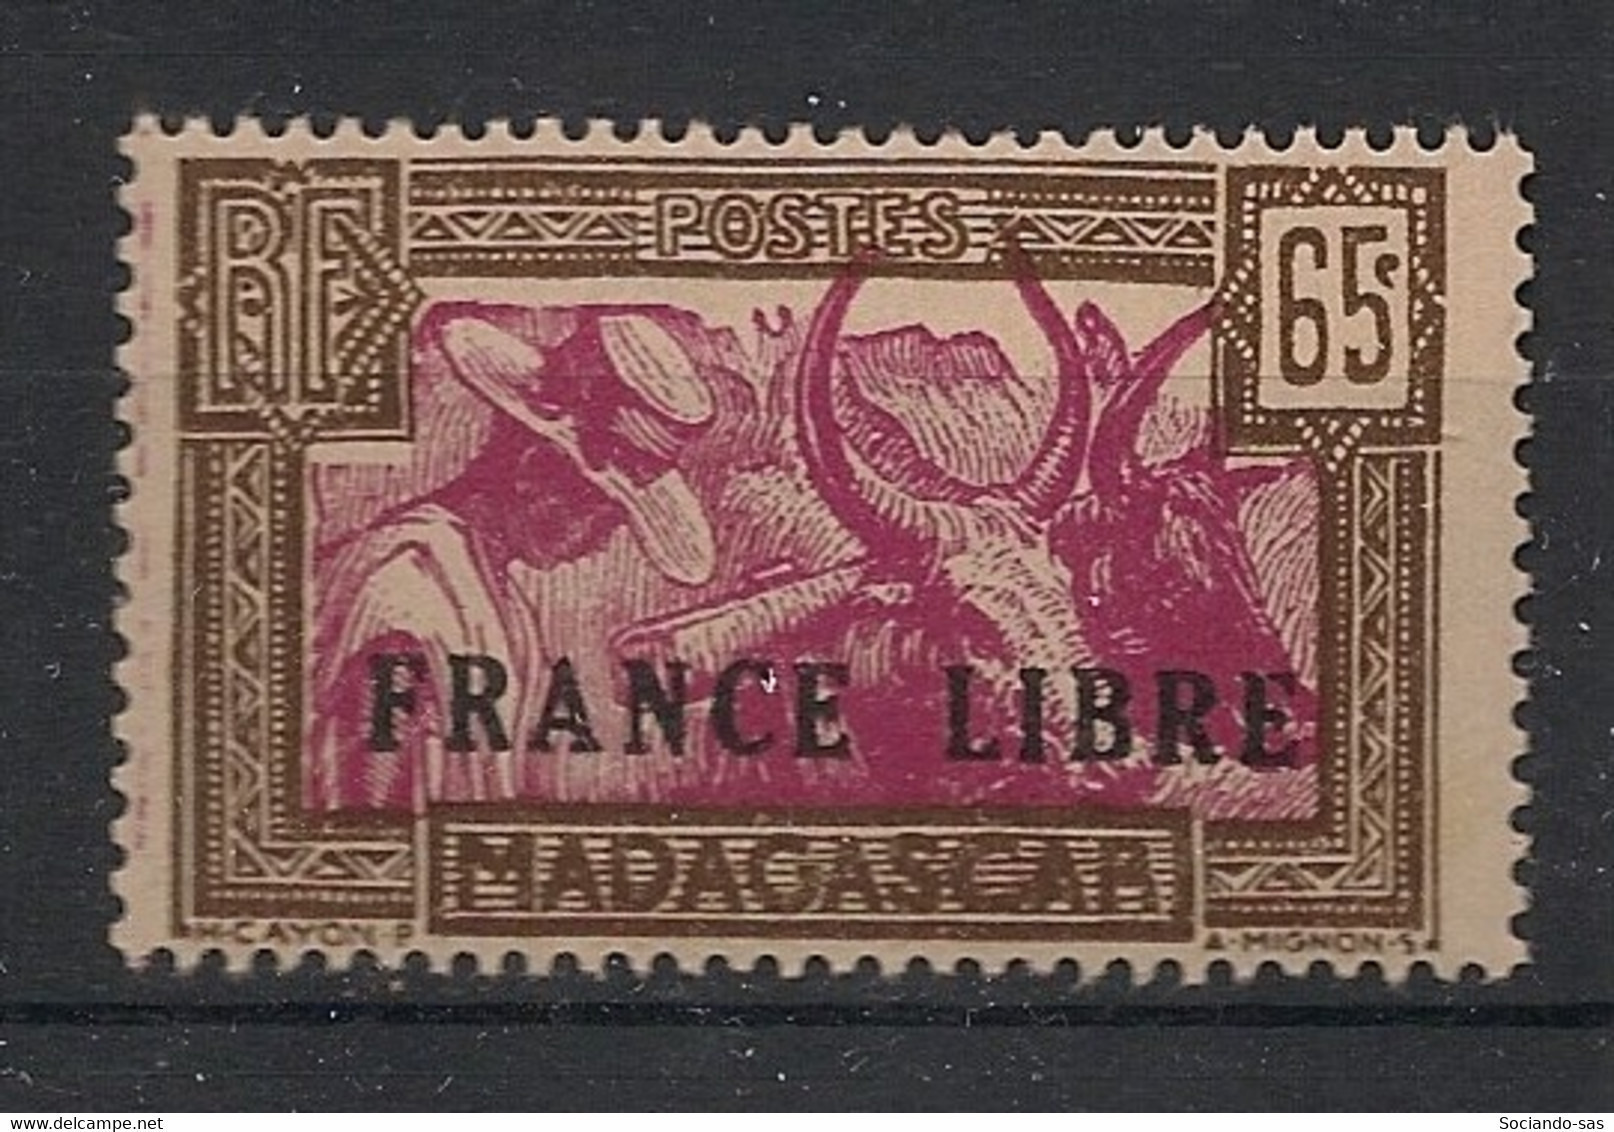 MADAGASCAR - 1942 - N°YT. 236 - France Libre - Neuf GC** / MNH / Postfrisch - Ungebraucht